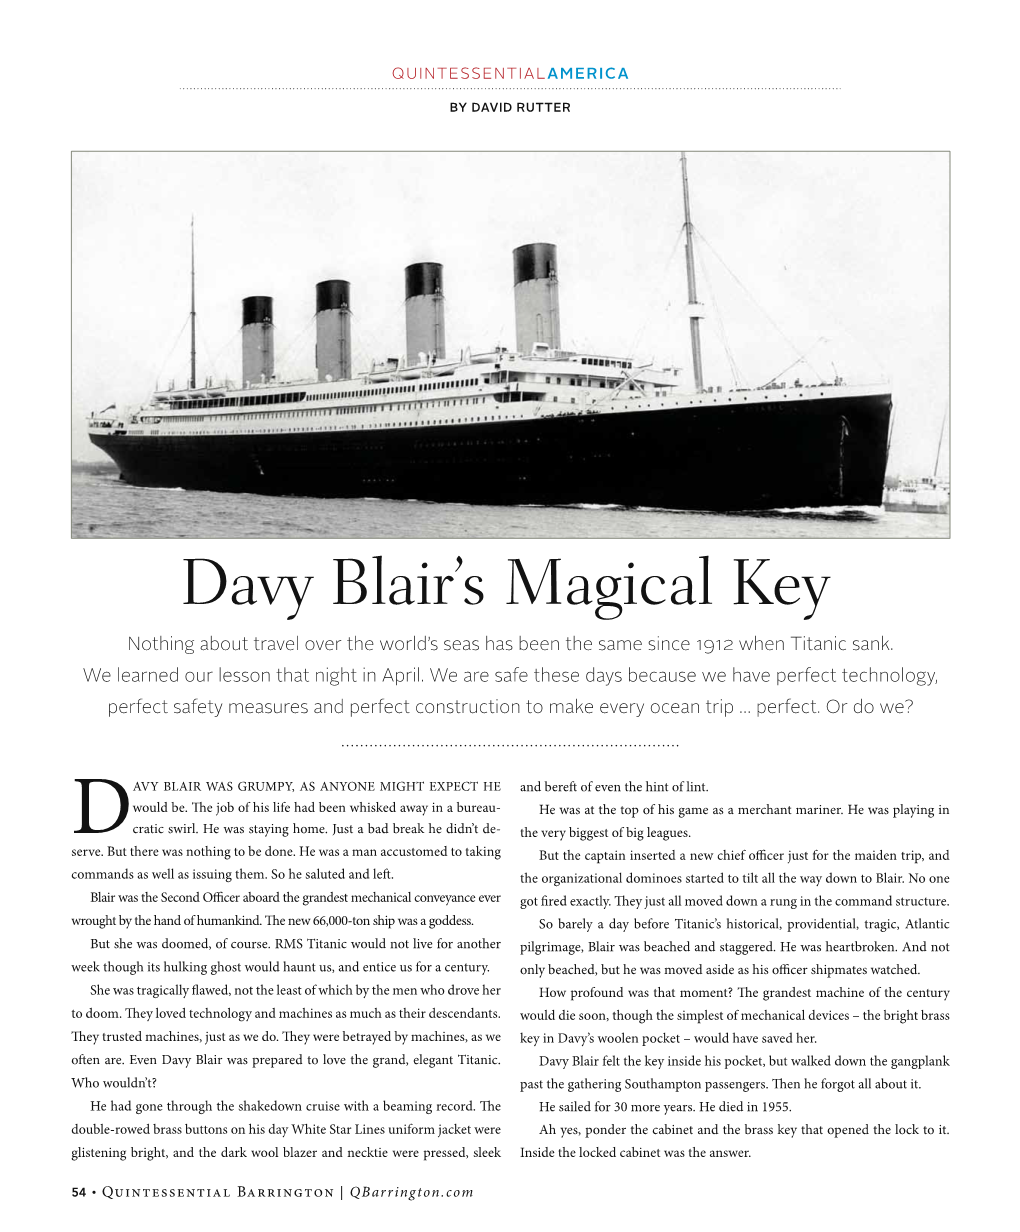 Davy Blair's Magical